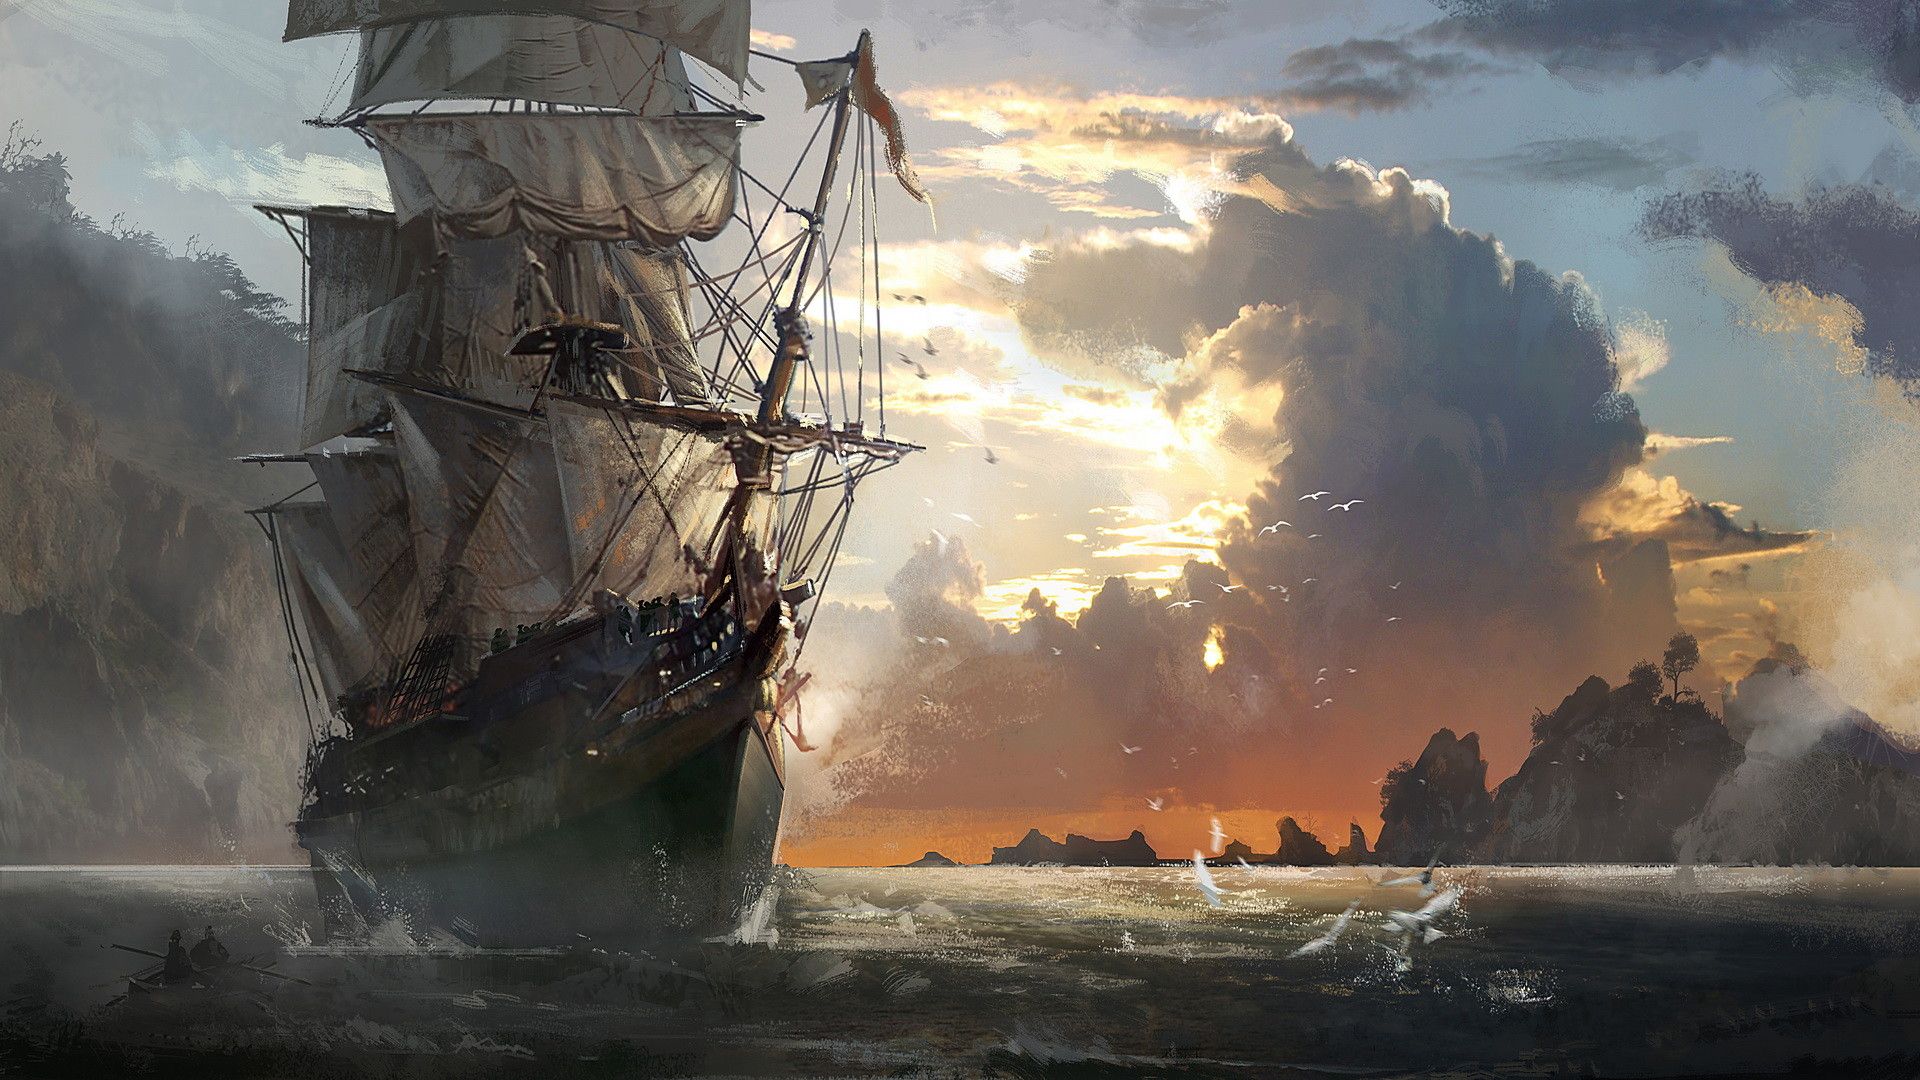 Pirate ship sailing in the ocean - Pirate